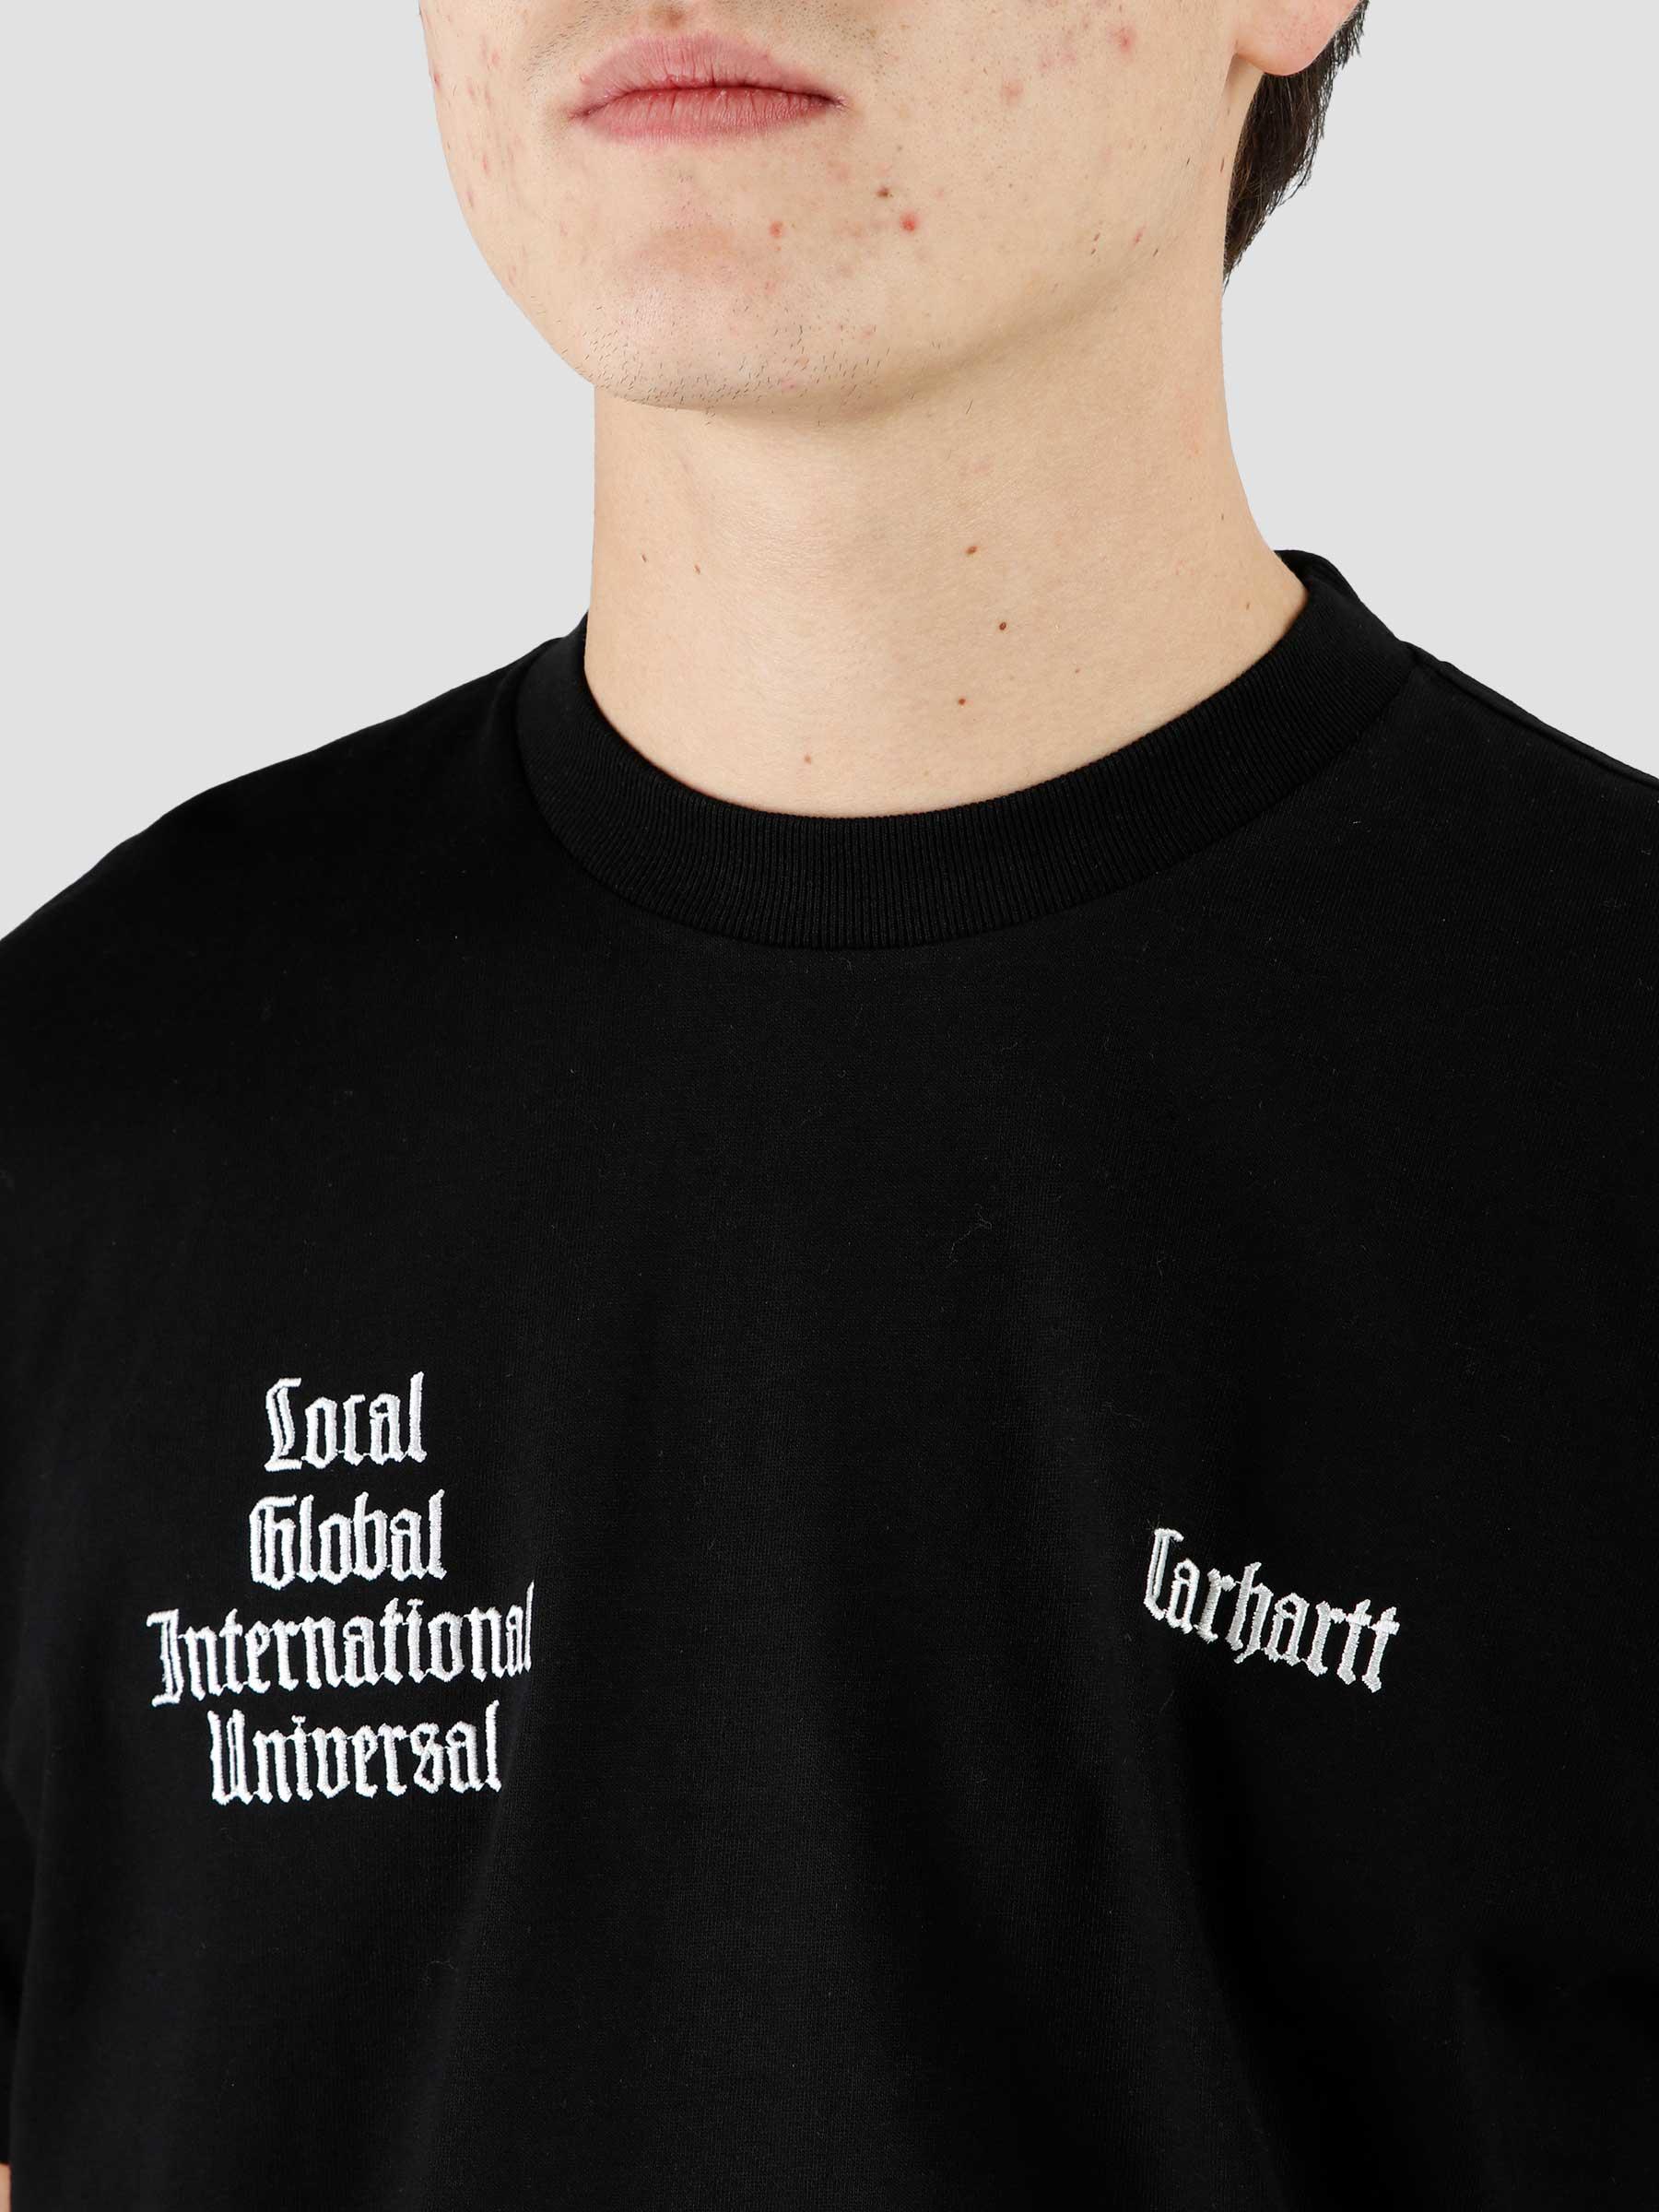 Letterman T-Shirt Black Wax I031010-K02XX